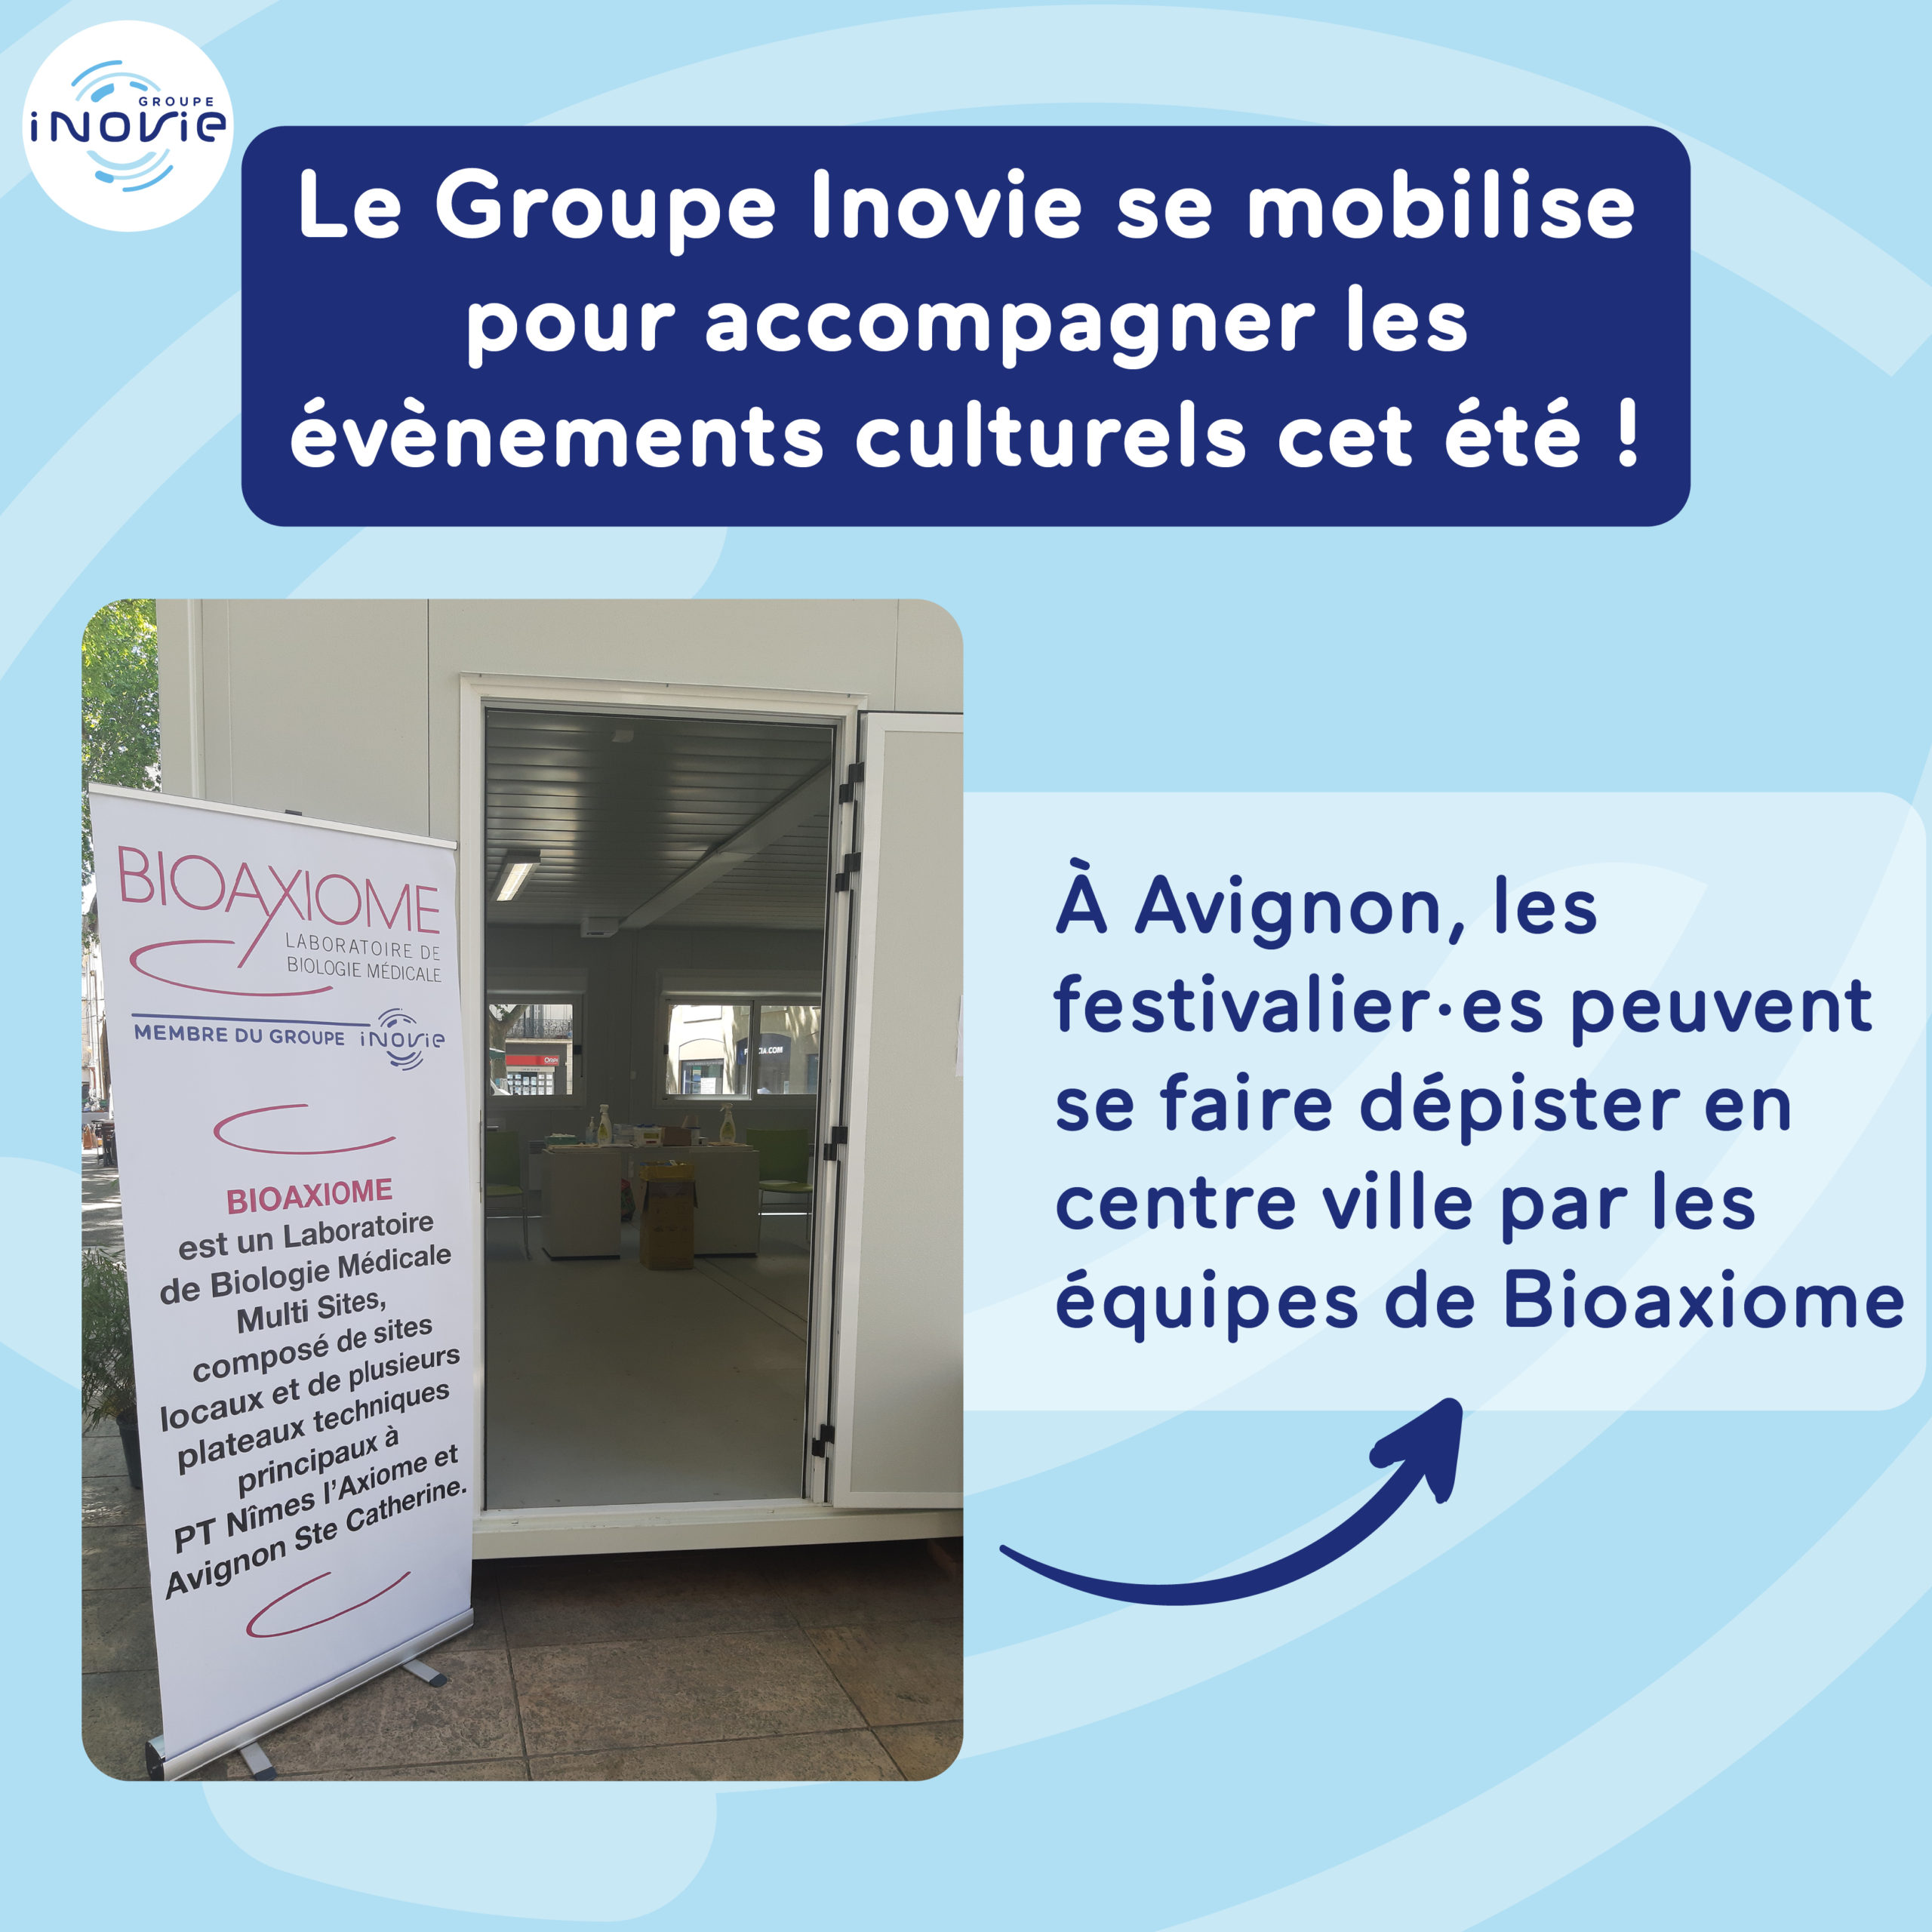 Le Groupe Inovie se mobilise pour accompagner les évènements culturels cet été ! À Avignon, les festivaliers peuvent se faire dépister en centre ville par les équipes de Bioaxiome.